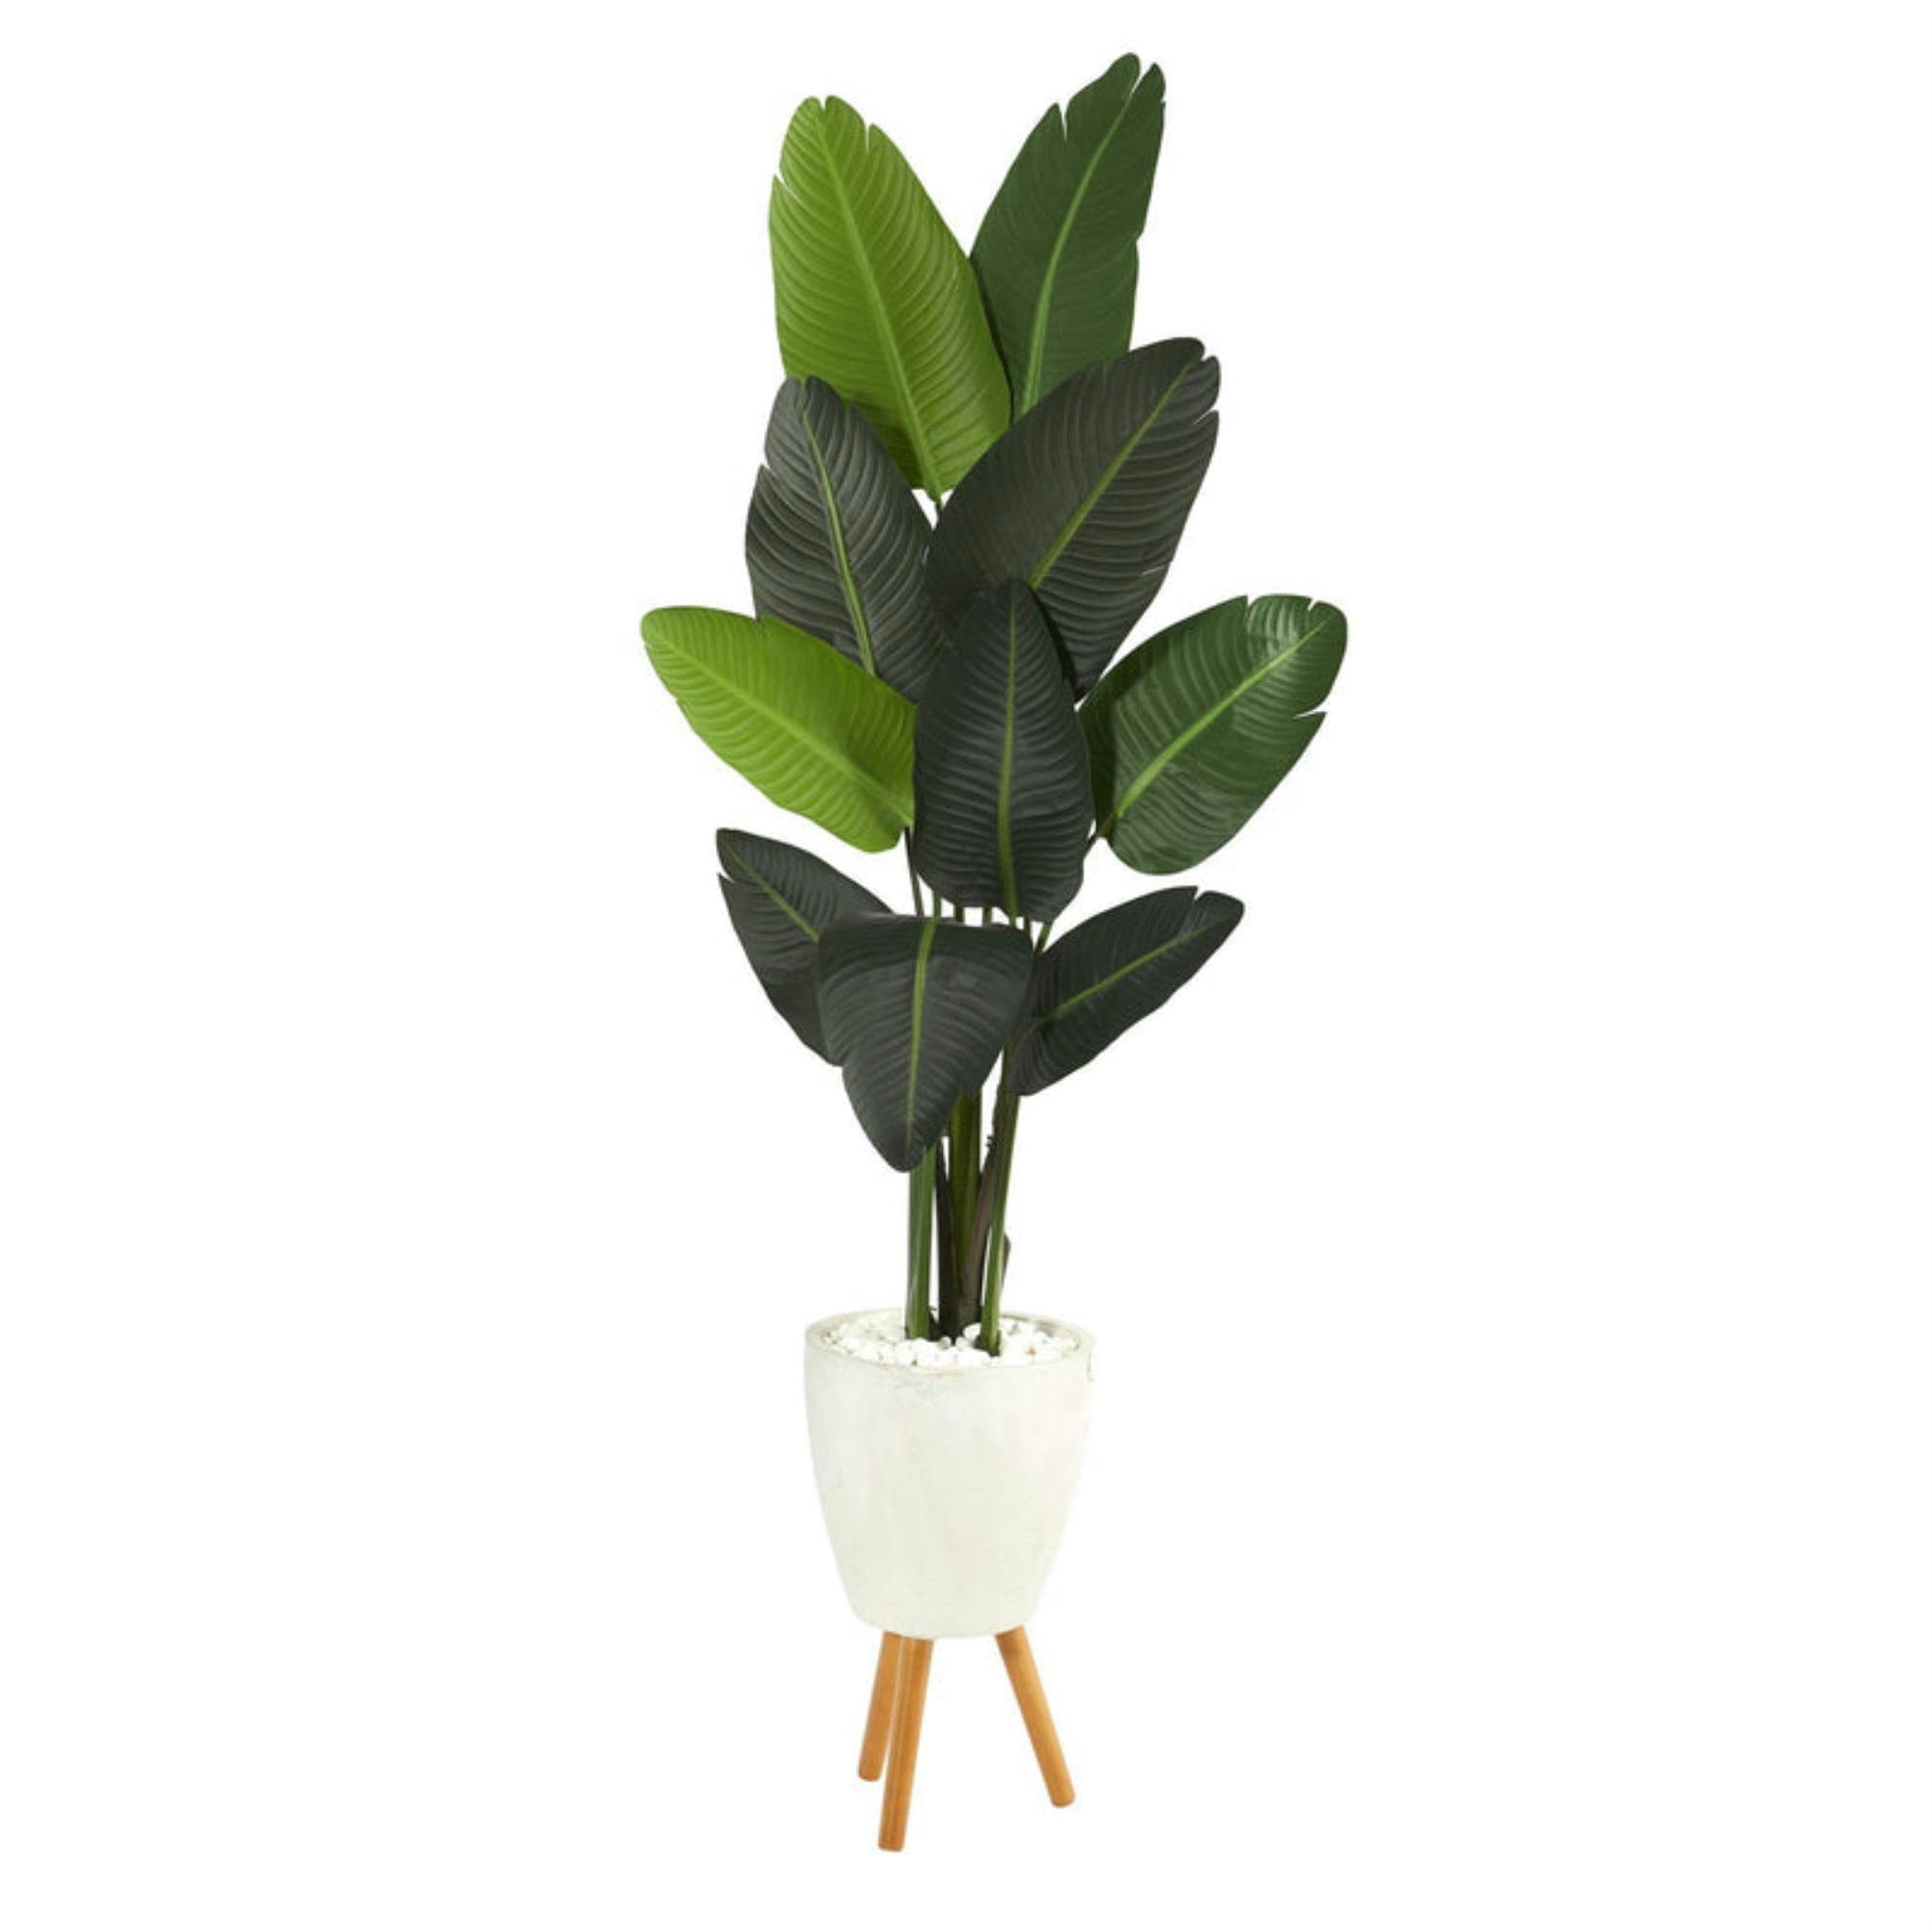 Lush Green 50" Fiddle Leaf Fig in Sleek Metal Planter